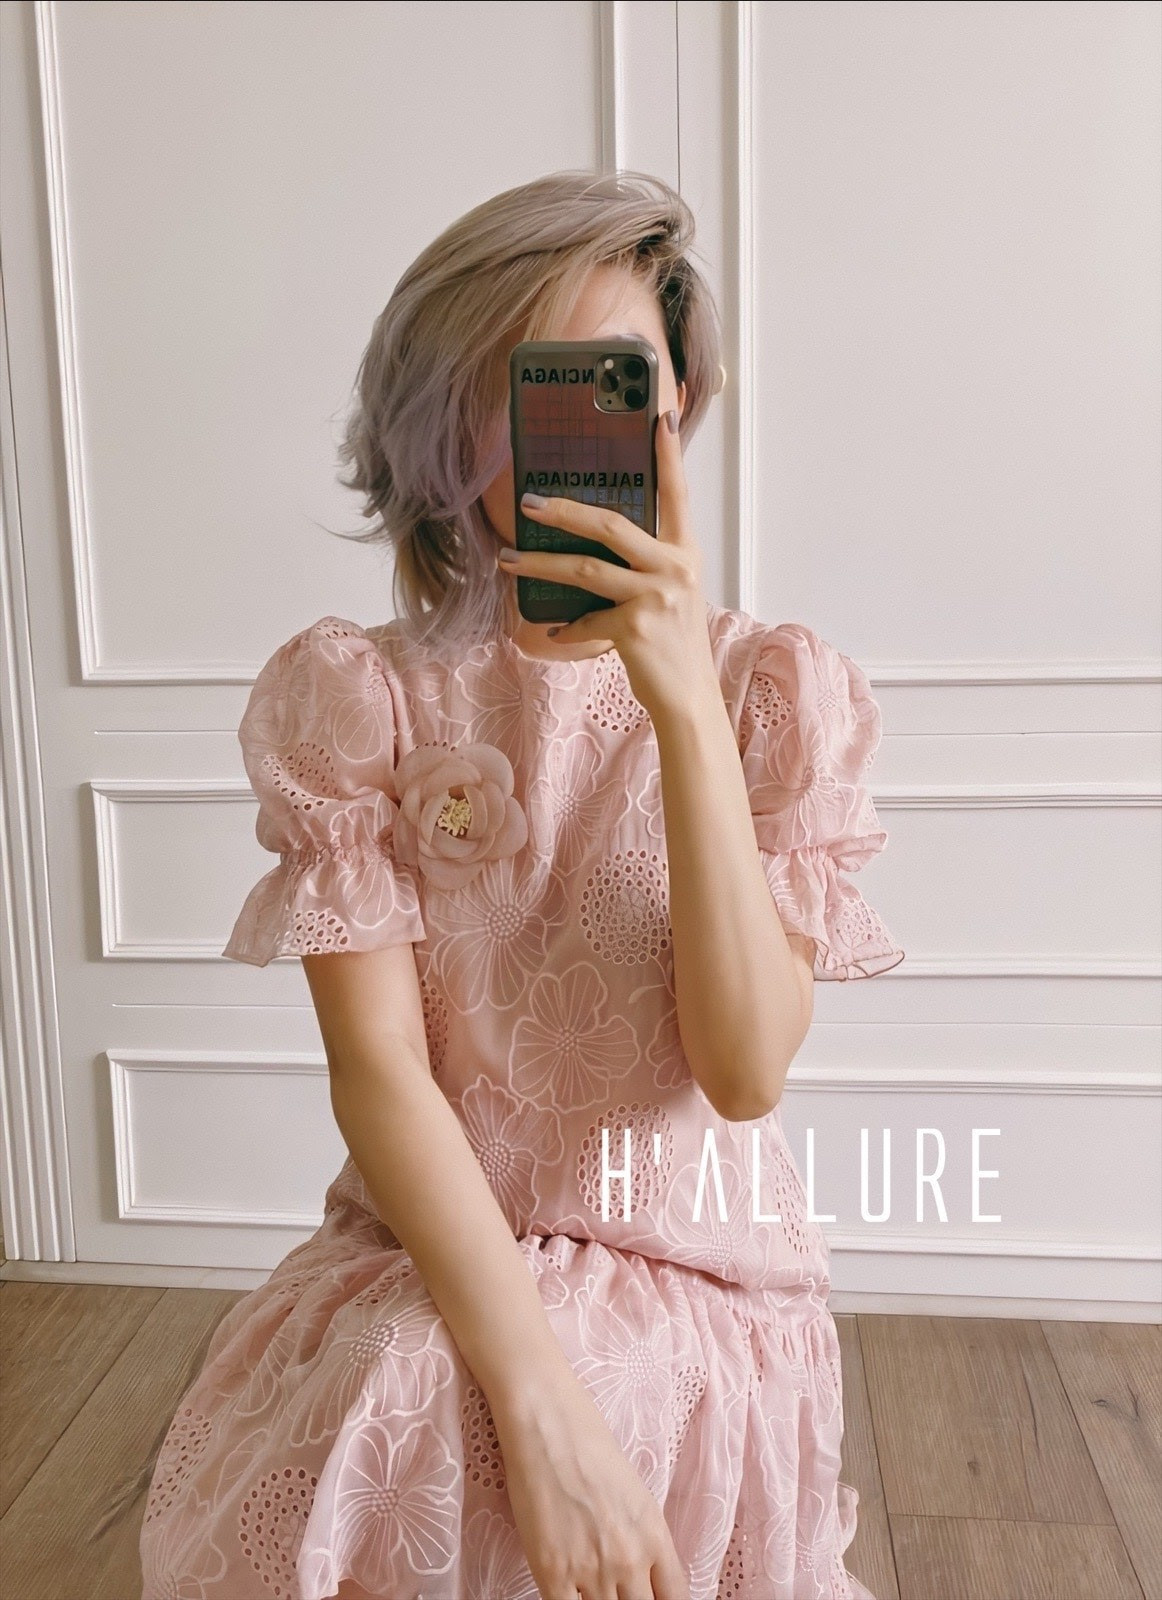 Tone hồng pastel dịu dàng vẫn đang là mẫu thiết kế best-seller tại H'Allure